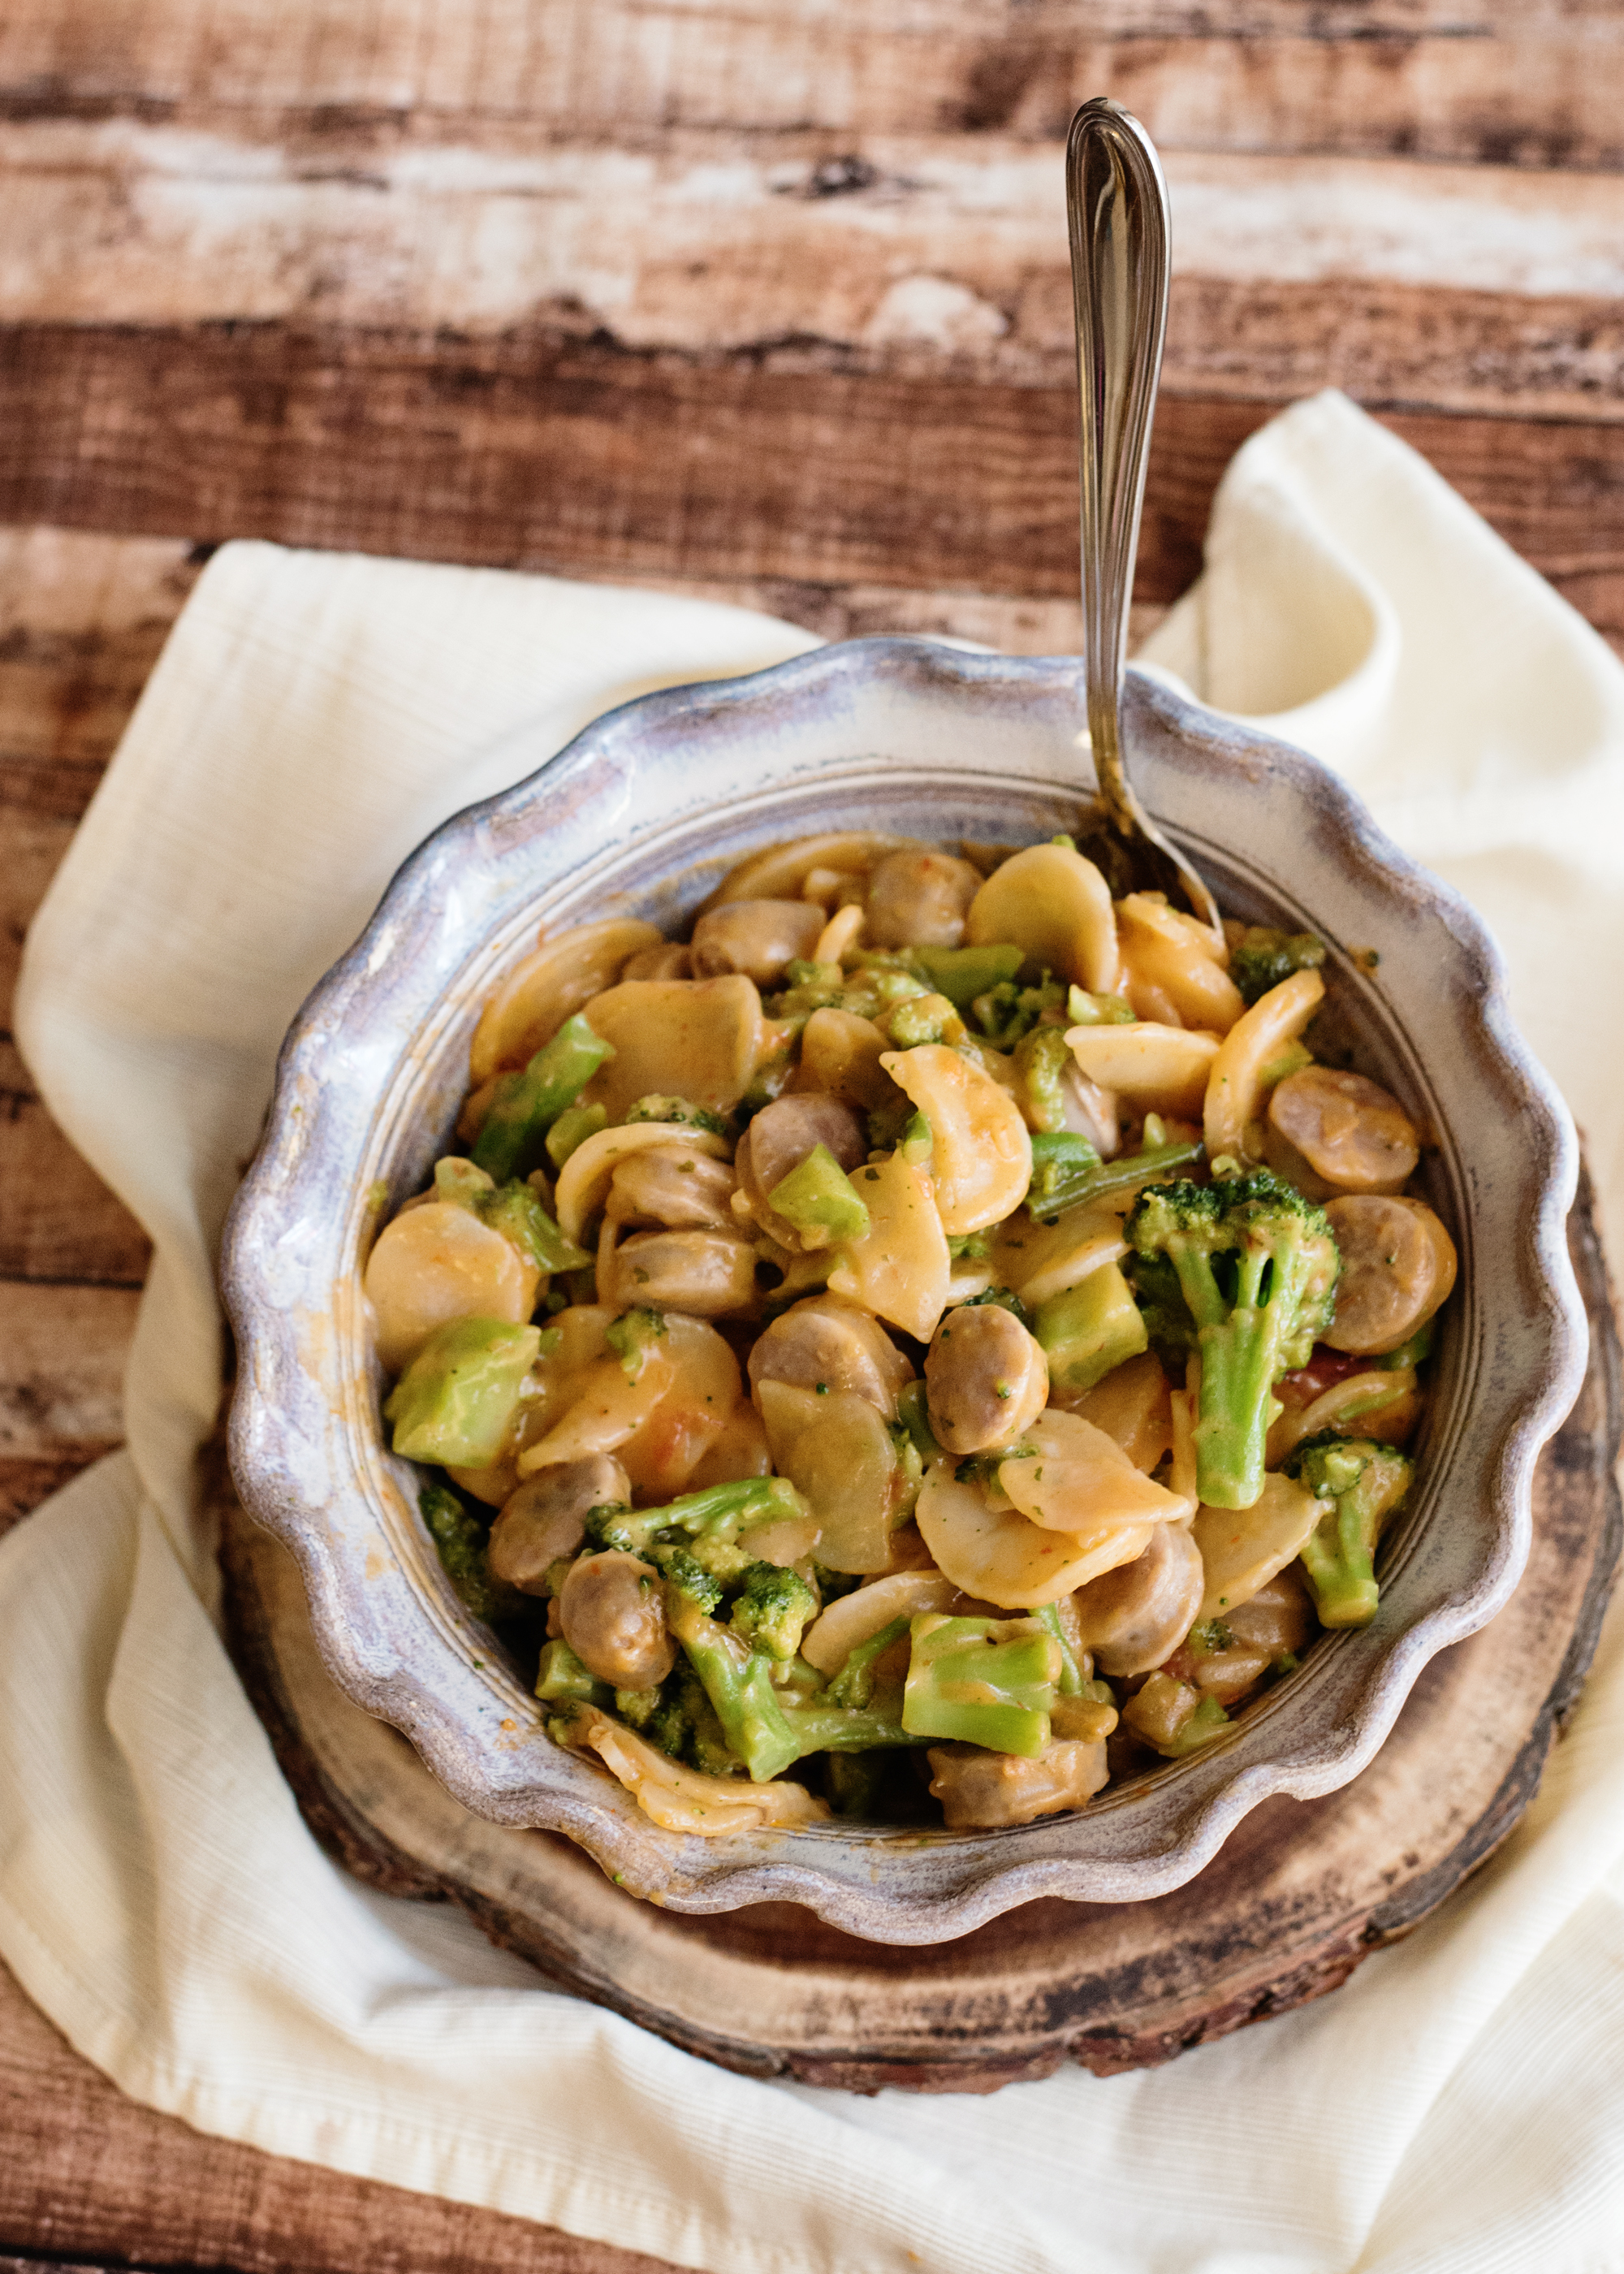 Cheesy Potatoes, Broccoli and Bratwurst Skillet Recipe